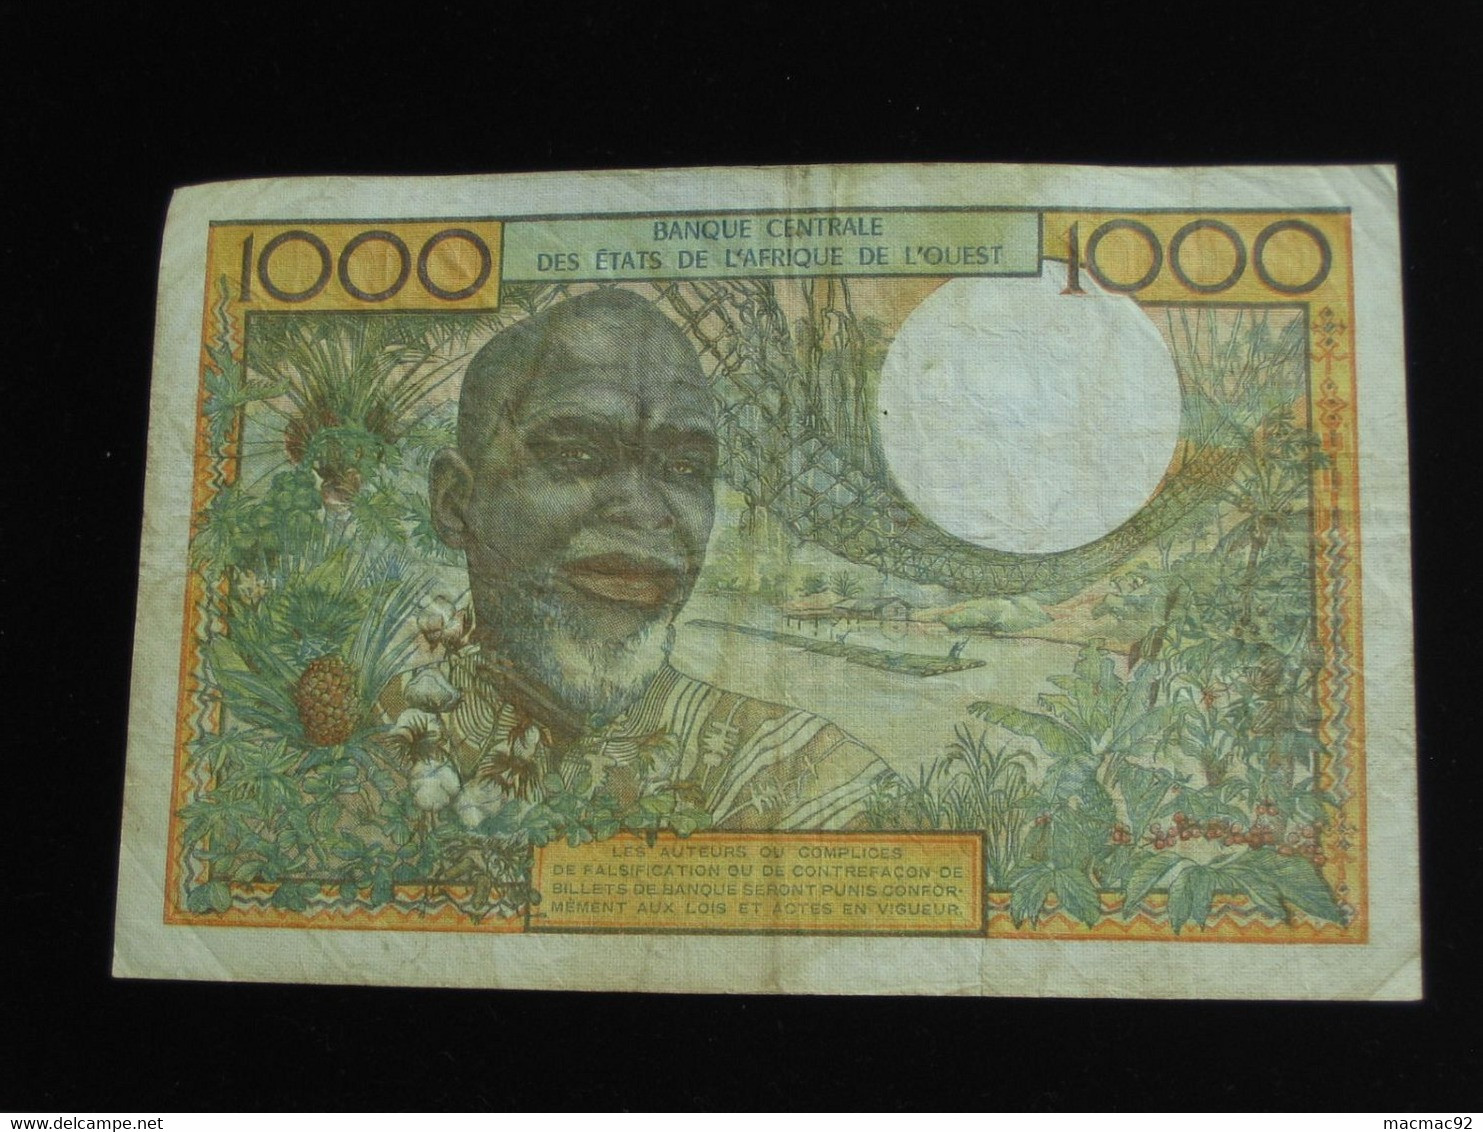 COTE D'IVOIRE - 1000 Francs Sans Date - Banque Centrale Des états De L'Afrique De L'ouest  **** EN  ACHAT IMMEDIAT  **** - Costa De Marfil